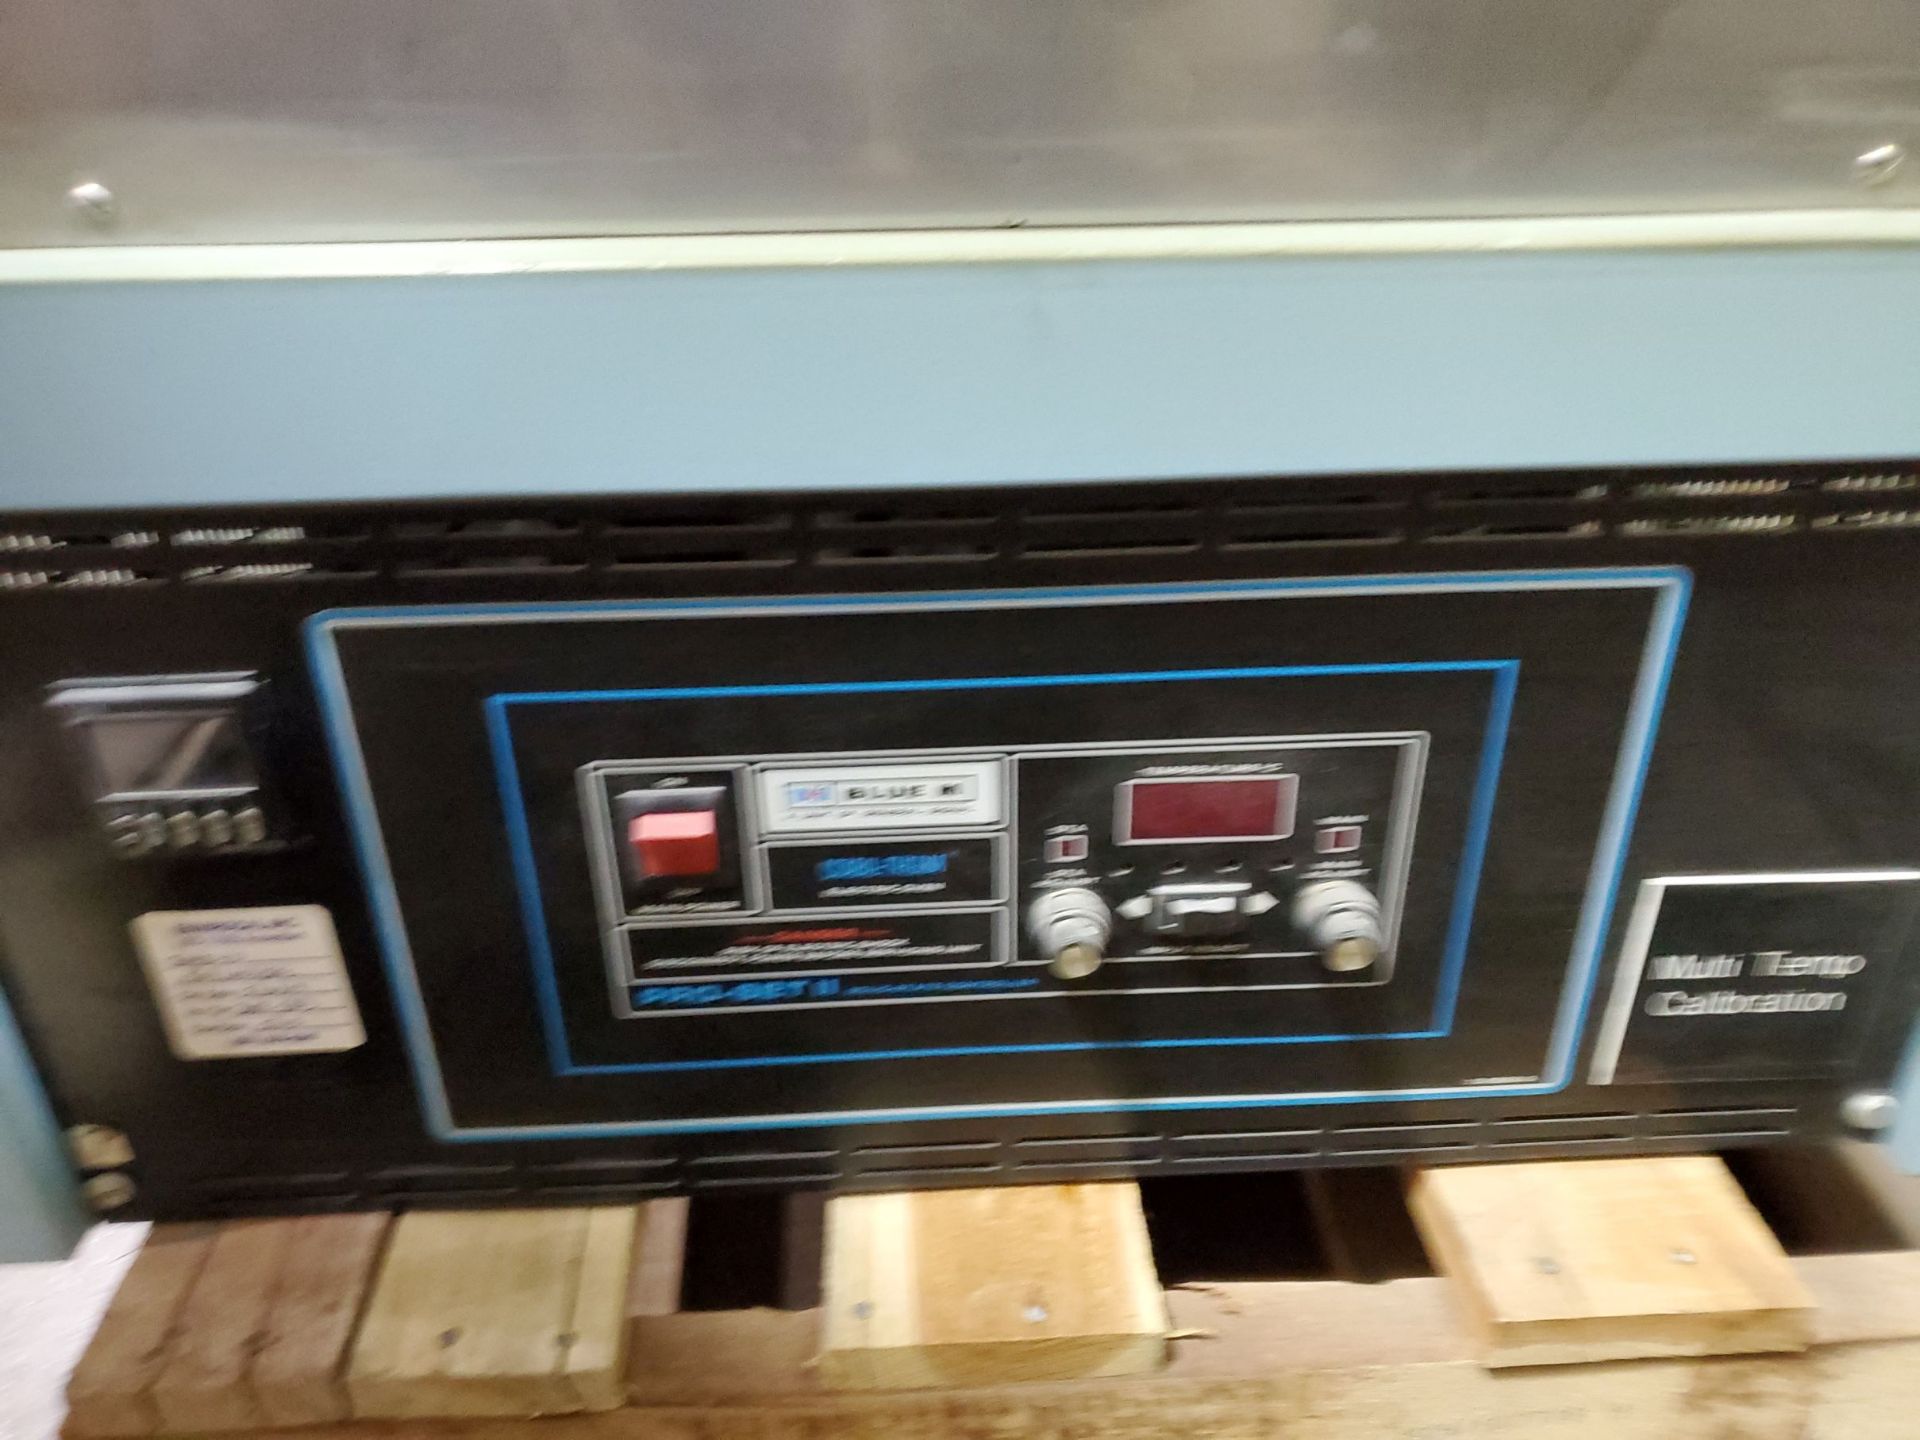 Blue M Lab Oven, Model ESP-400C-5, Serial Number ESP-1569, Temperature Range 38 deg C to 260 deg - Image 5 of 5